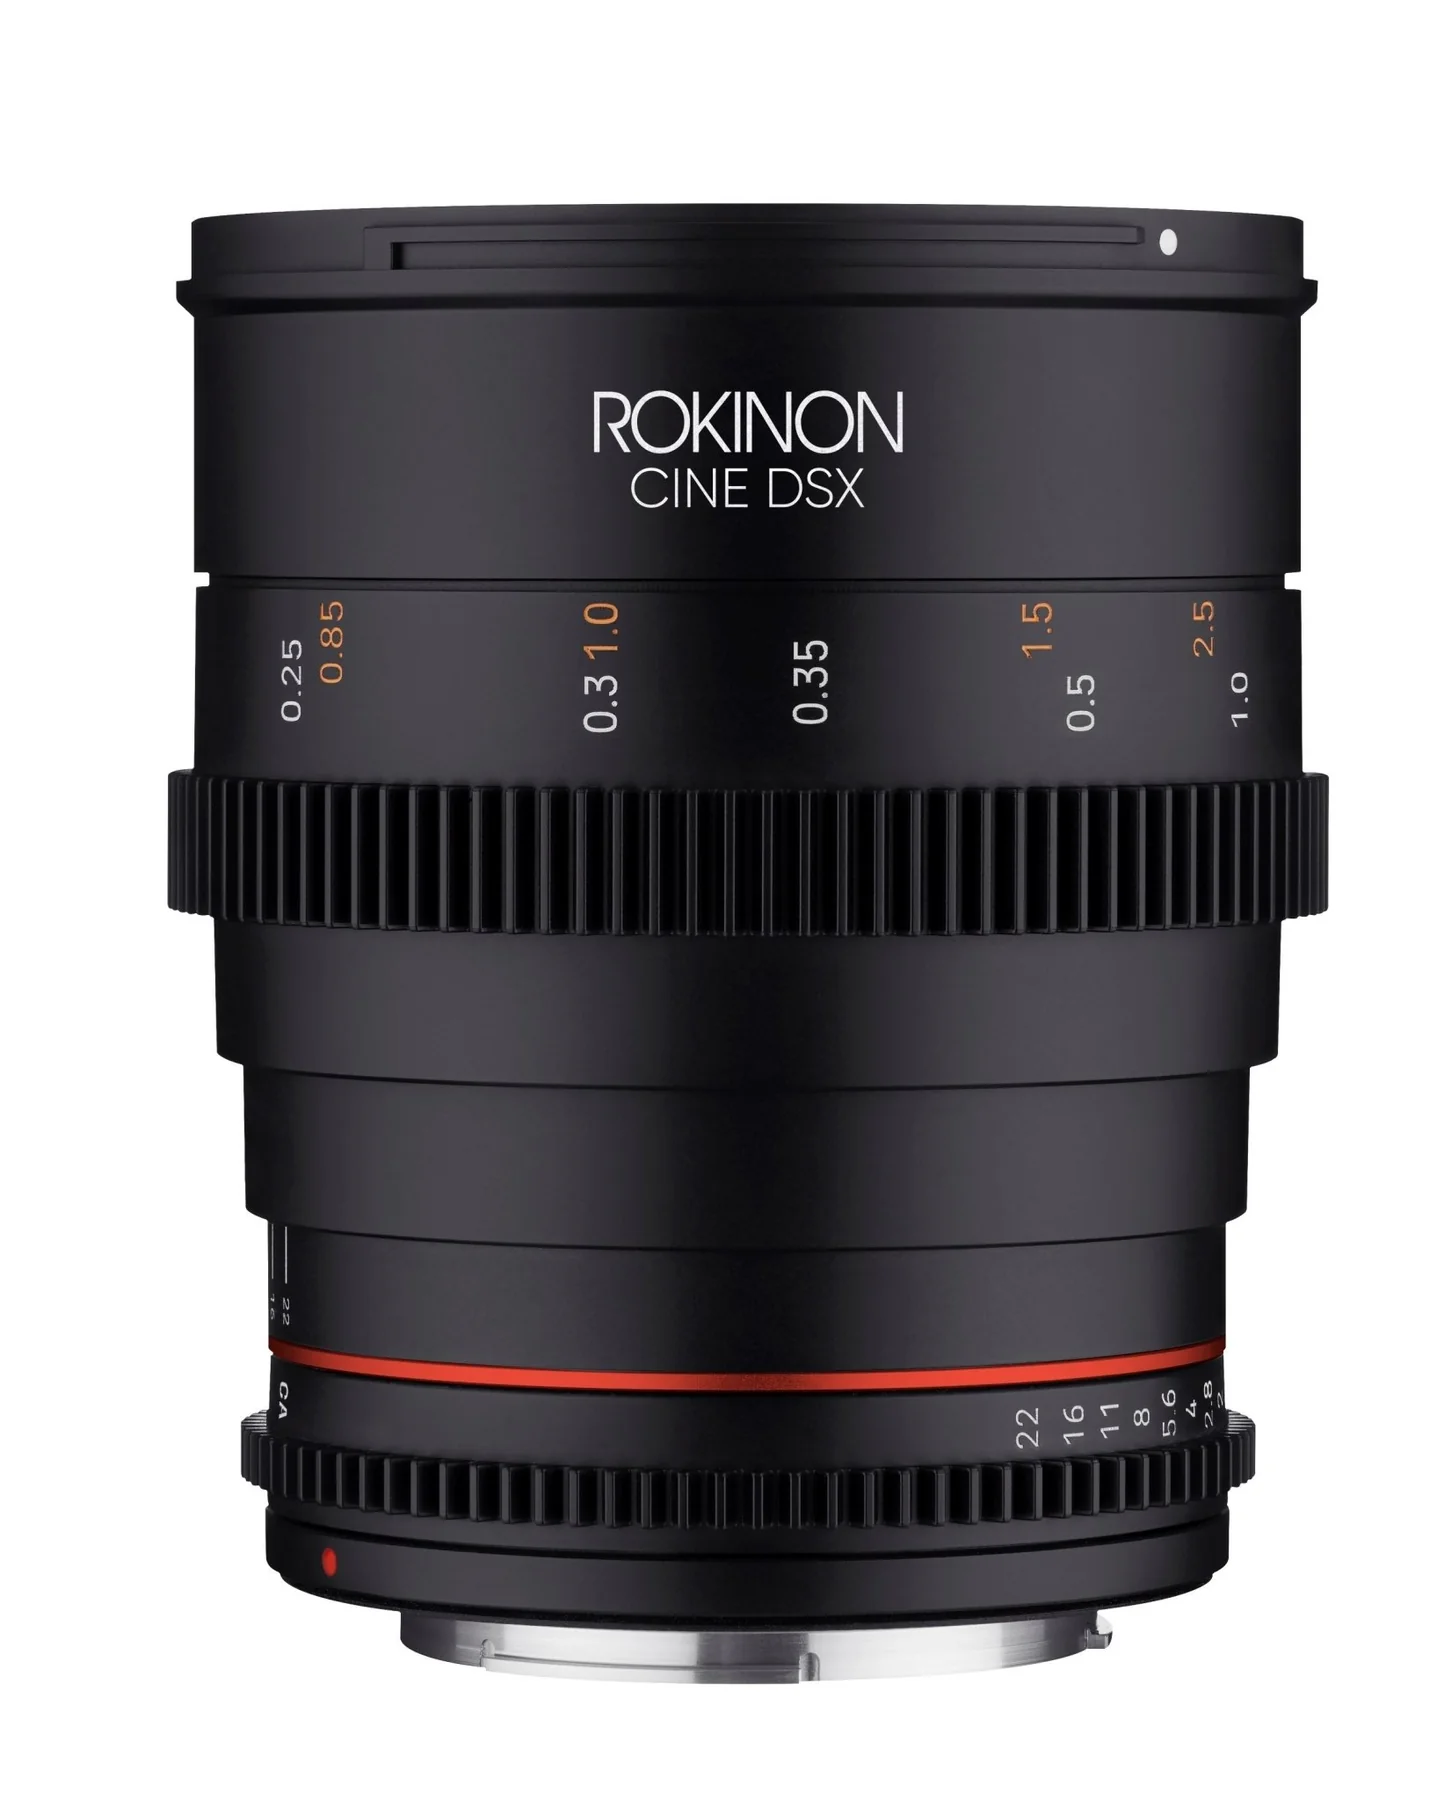 Ronikon 24mm T1.5 Full Frame Wide Angle Cine DSX - Sony E Lens Mount Camera tek